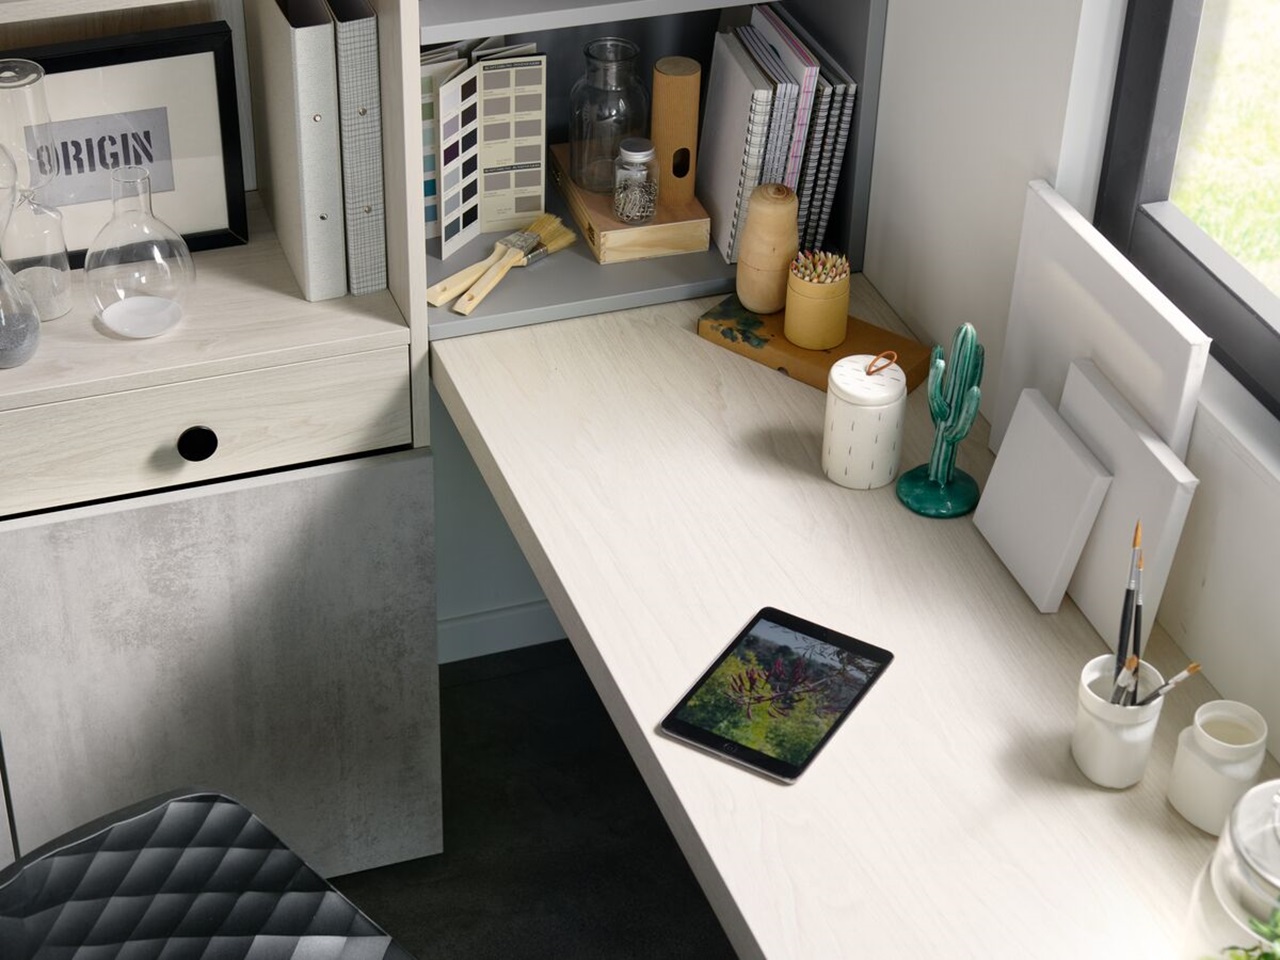 Espacio de despacho con superficie de trabajo ideal para el teletrabajo y los pasatiempos creativos